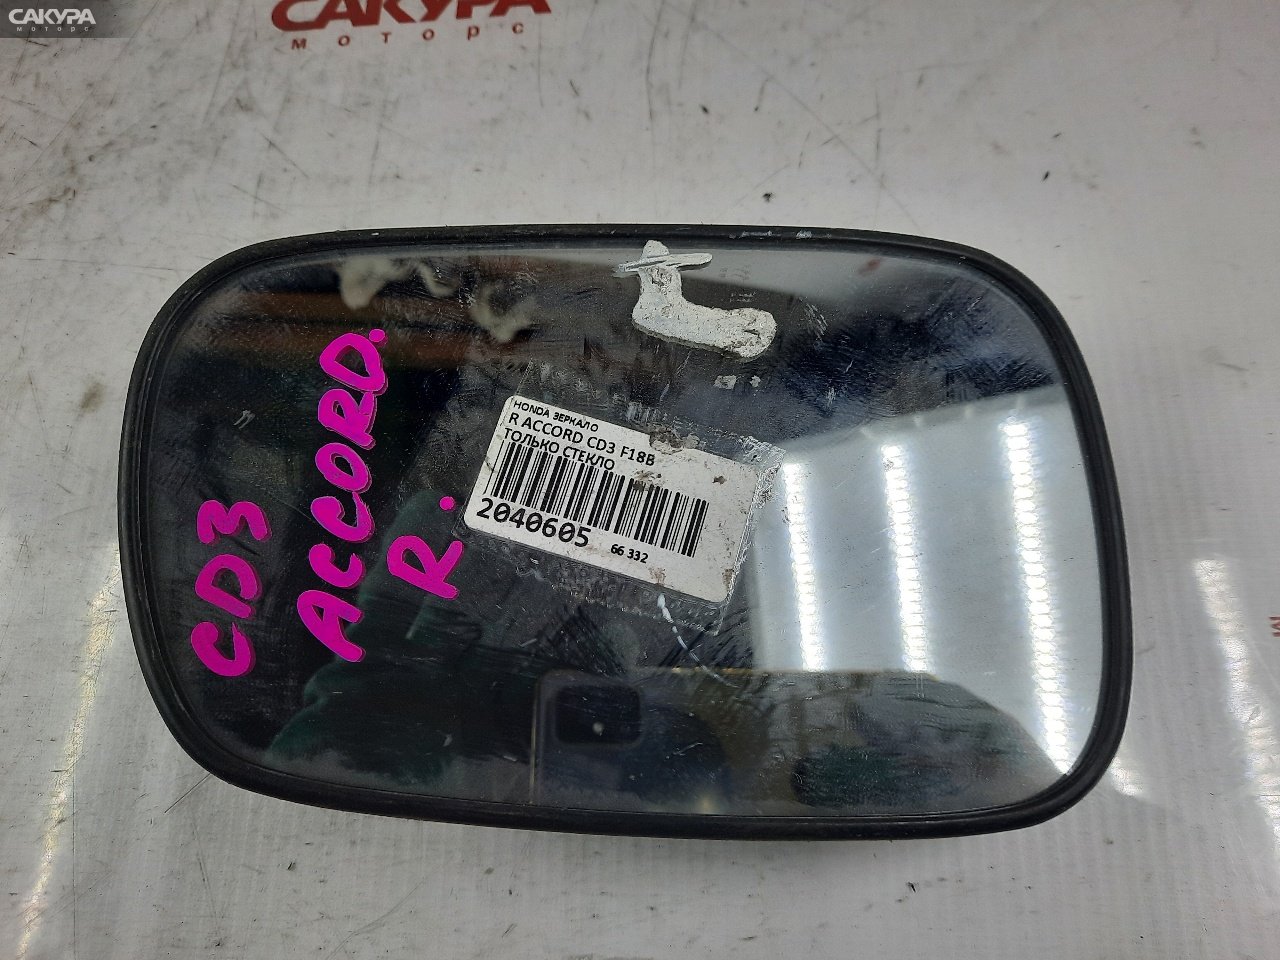 Зеркало боковое правое Honda Accord CD3 F18B: купить в Сакура Красноярск.